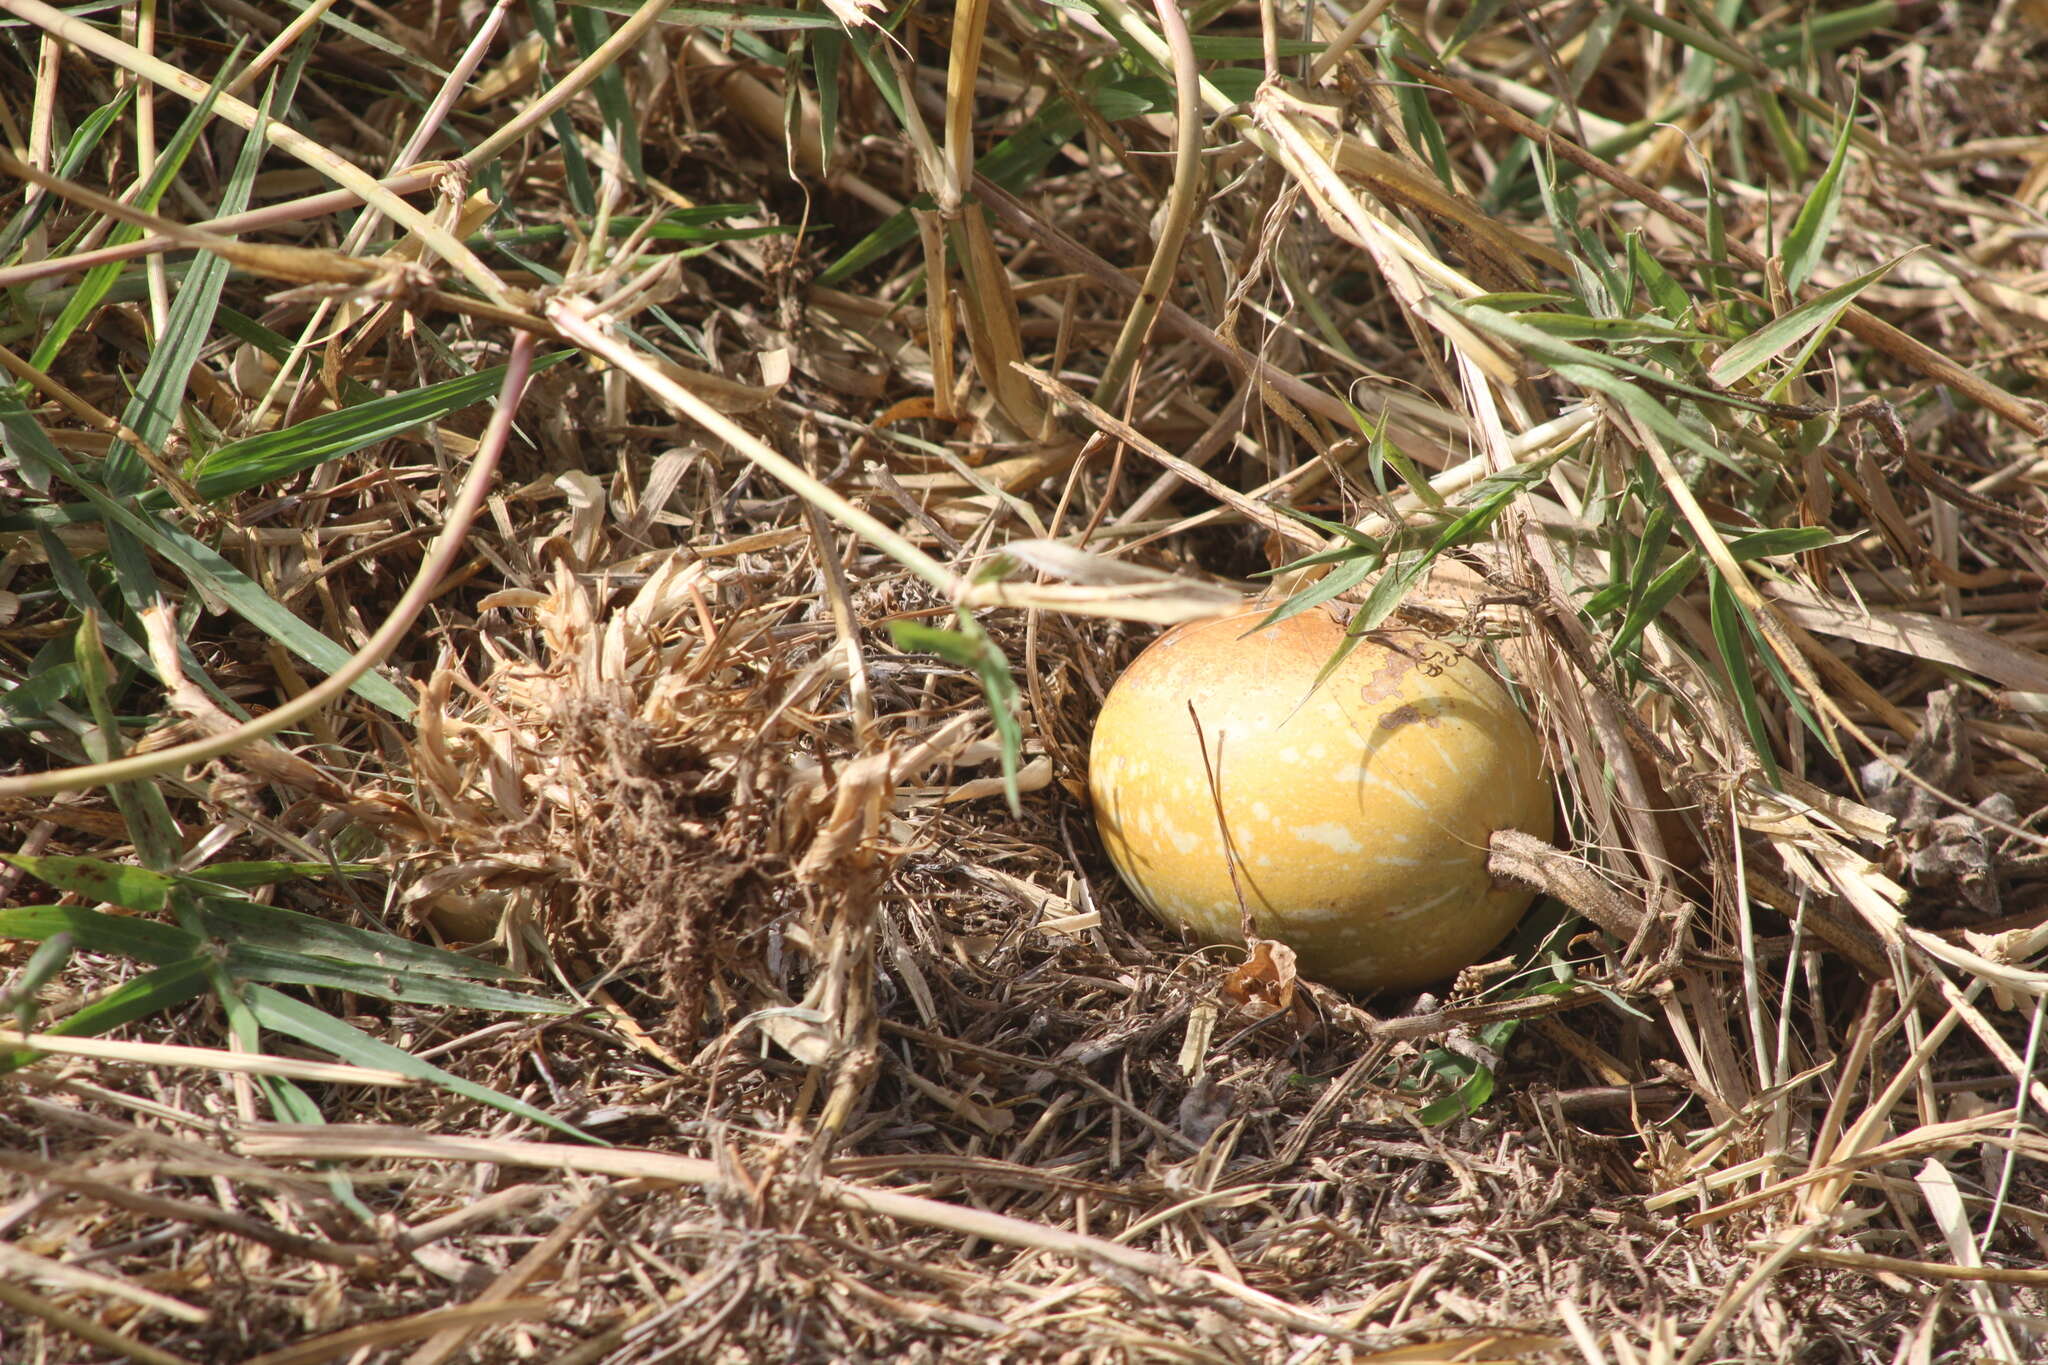 Image of pumpkin